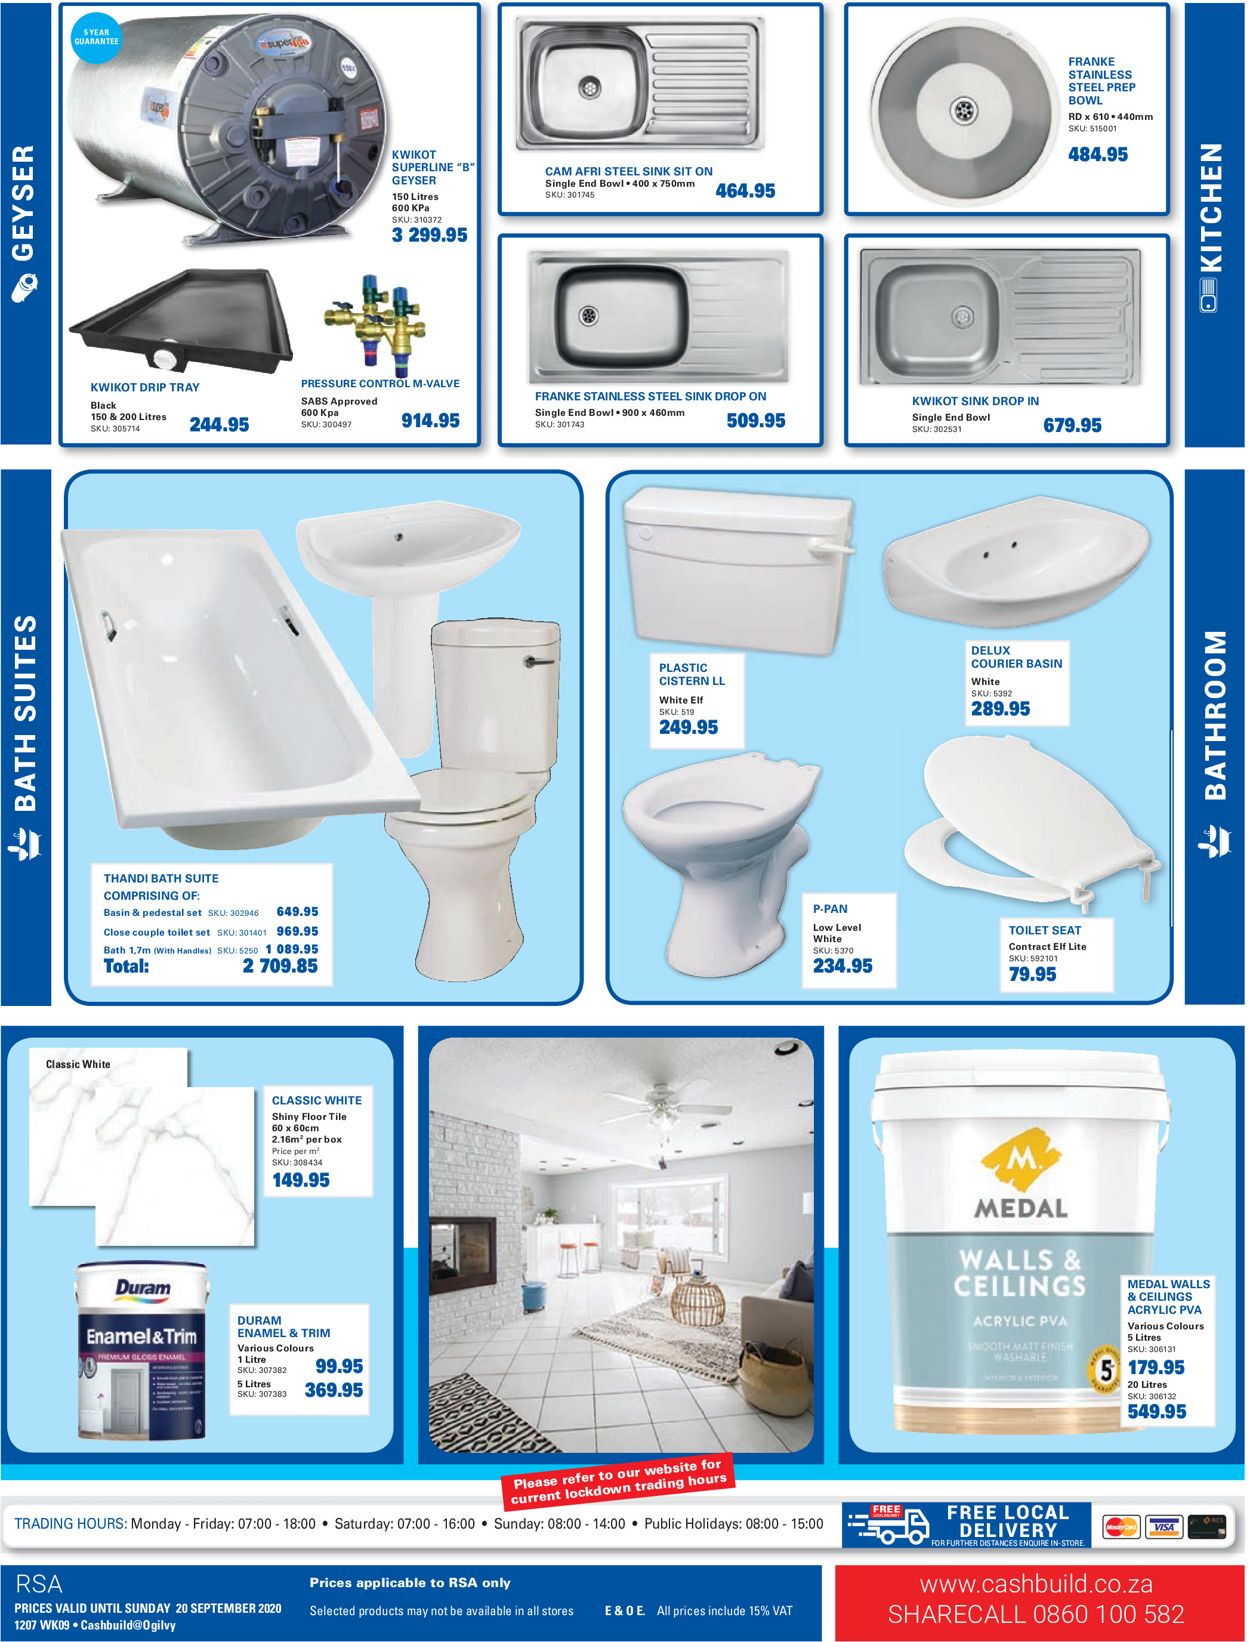 Cashbuild Toilets Prices Best Design Idea - vrogue.co